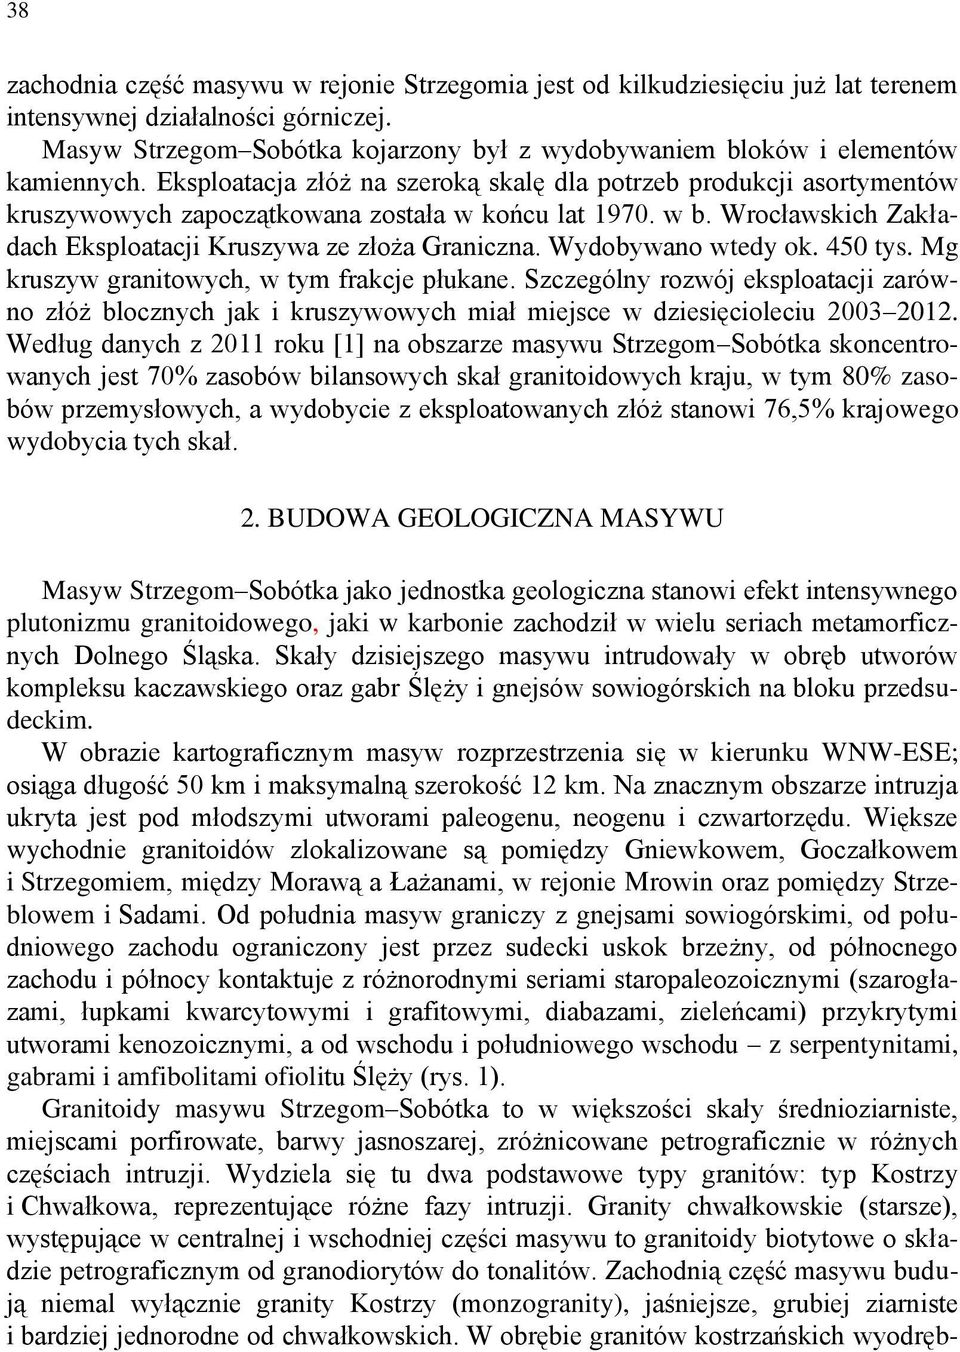 Eksploatacja złóż na szeroką skalę dla potrzeb produkcji asortymentów kruszywowych zapoczątkowana została w końcu lat 1970. w b. Wrocławskich Zakładach Eksploatacji Kruszywa ze złoża Graniczna.